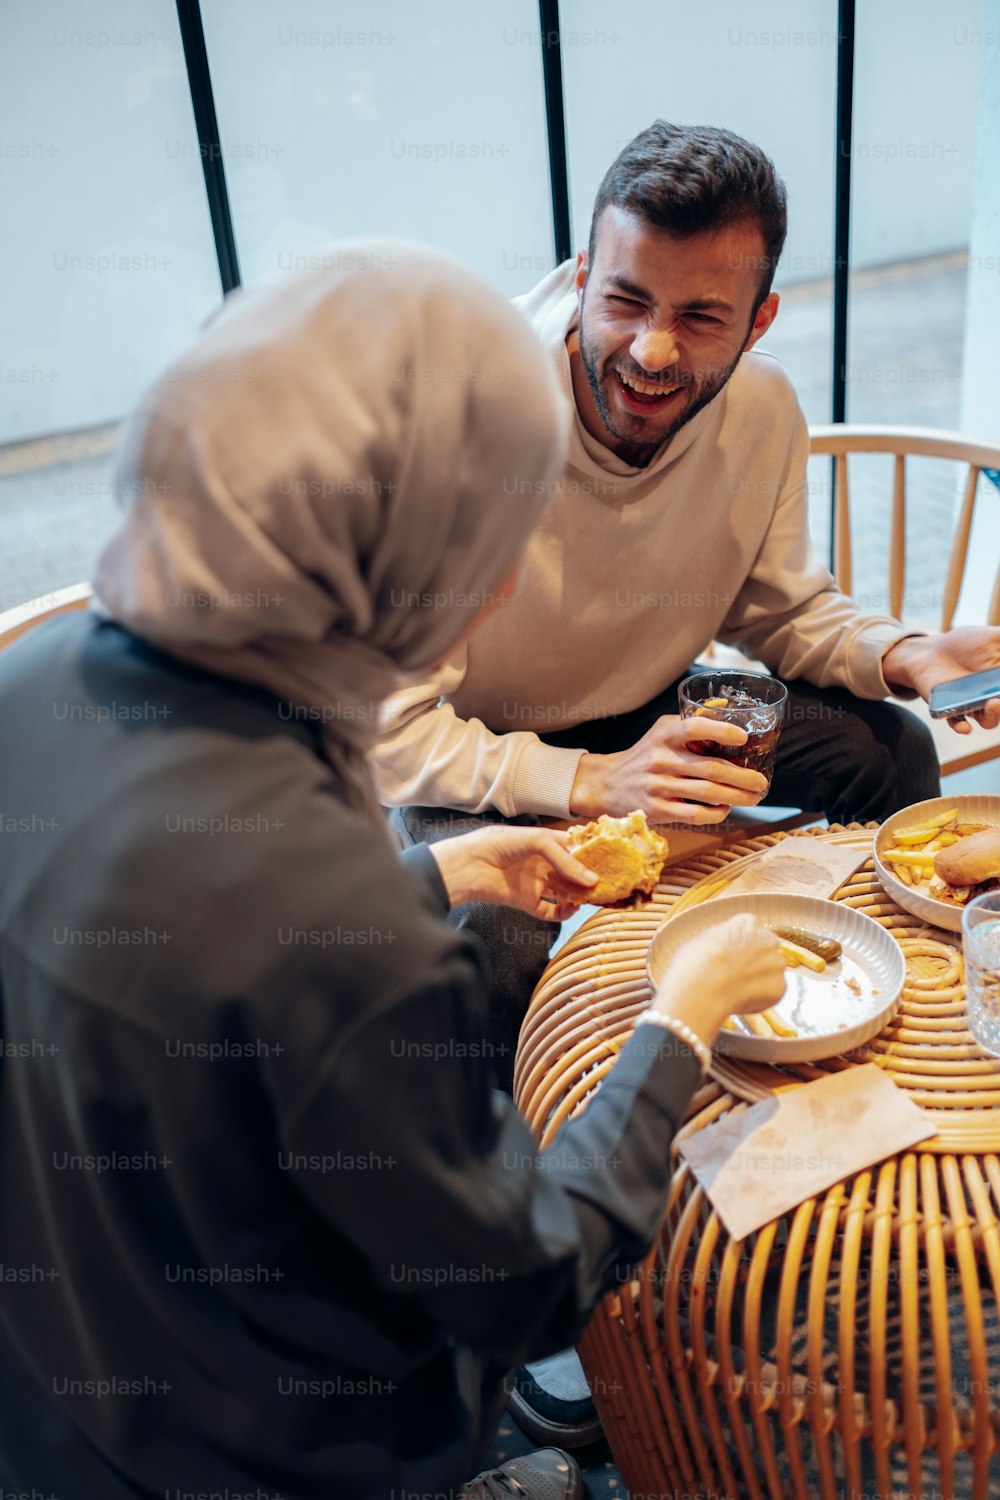 Un hombre y una mujer sentados en una mesa compartiendo una comida